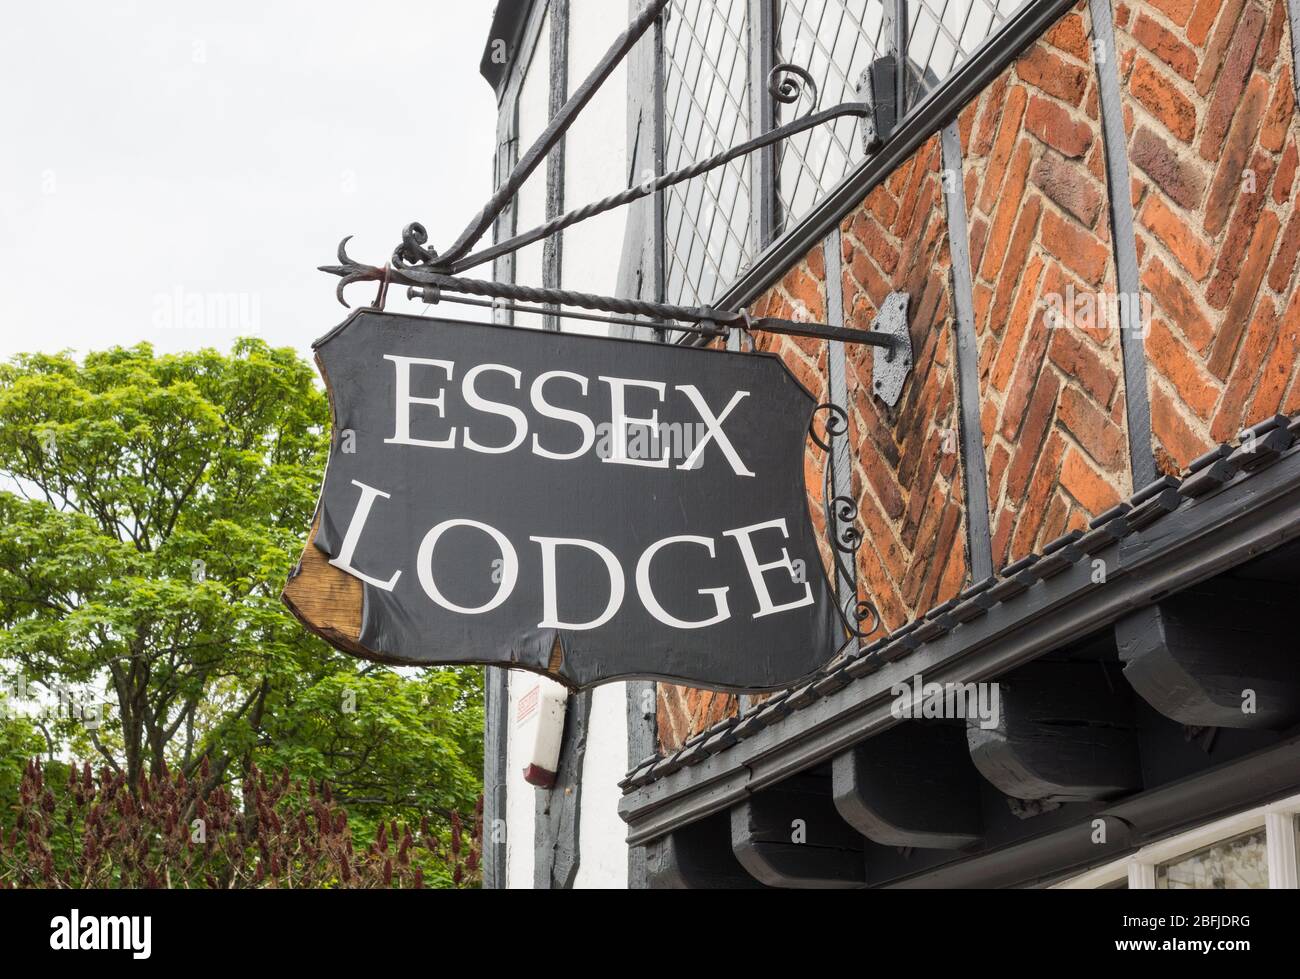 Travail à mi-bois sur Essex Lodge, Station Road, Barnes, London, Royaume-Uni Banque D'Images